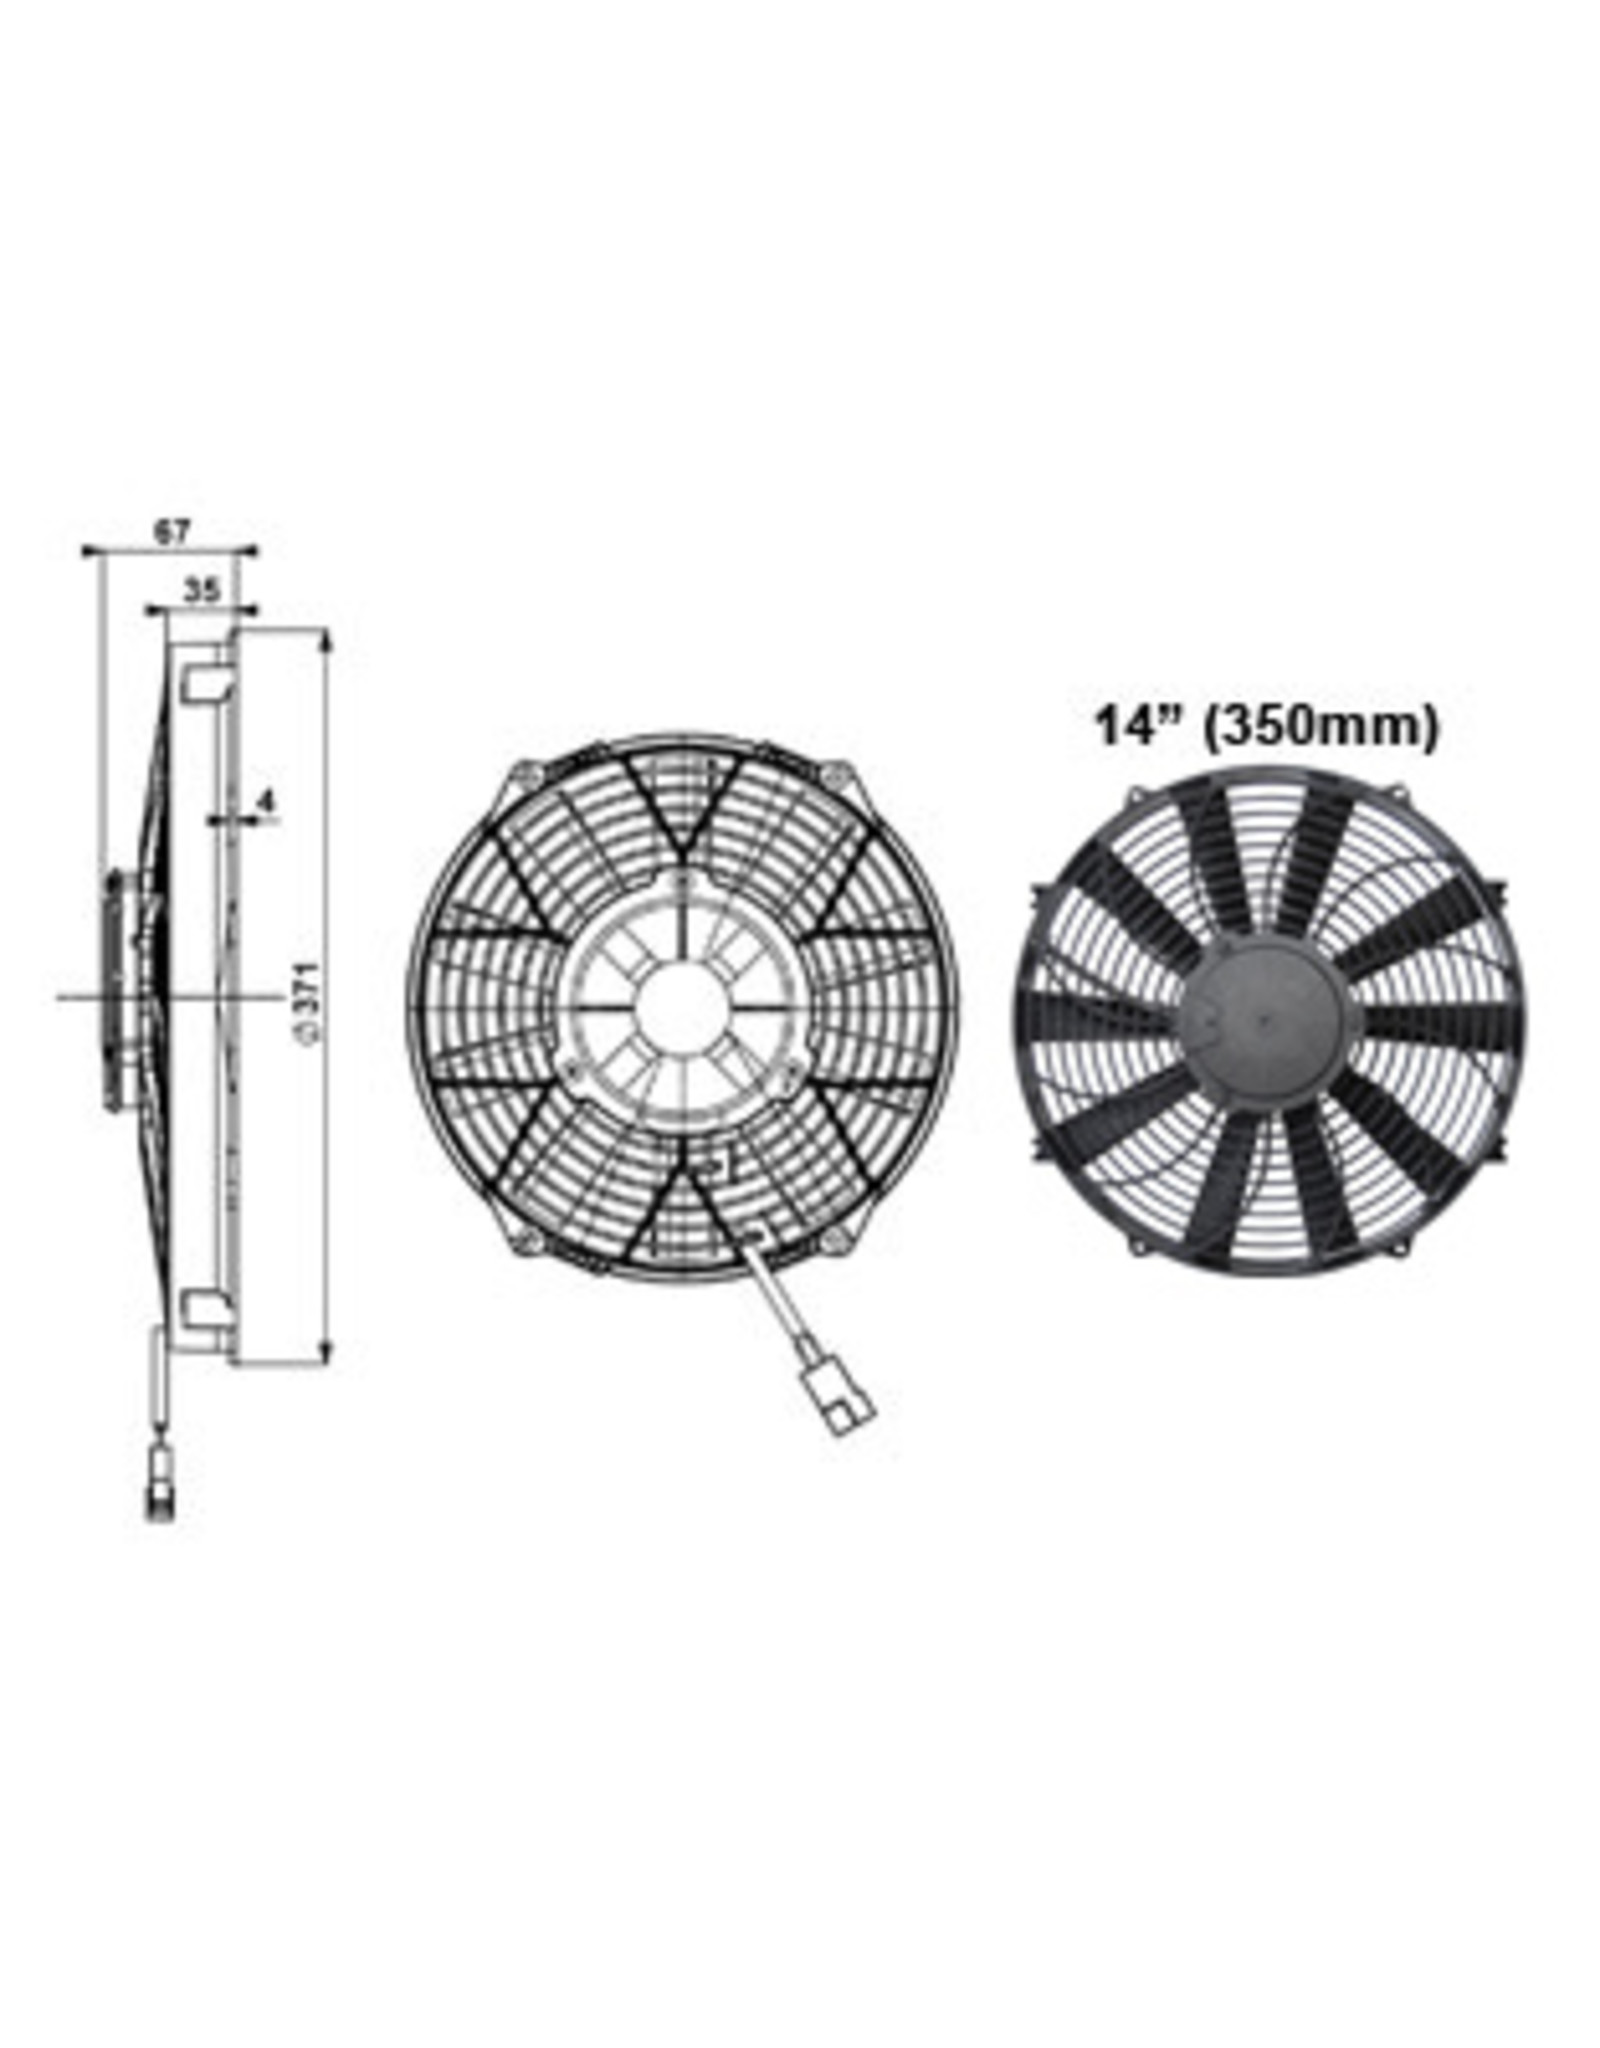 Comex Cooling Fan 14" (350mm) Puller/Sucker Fan